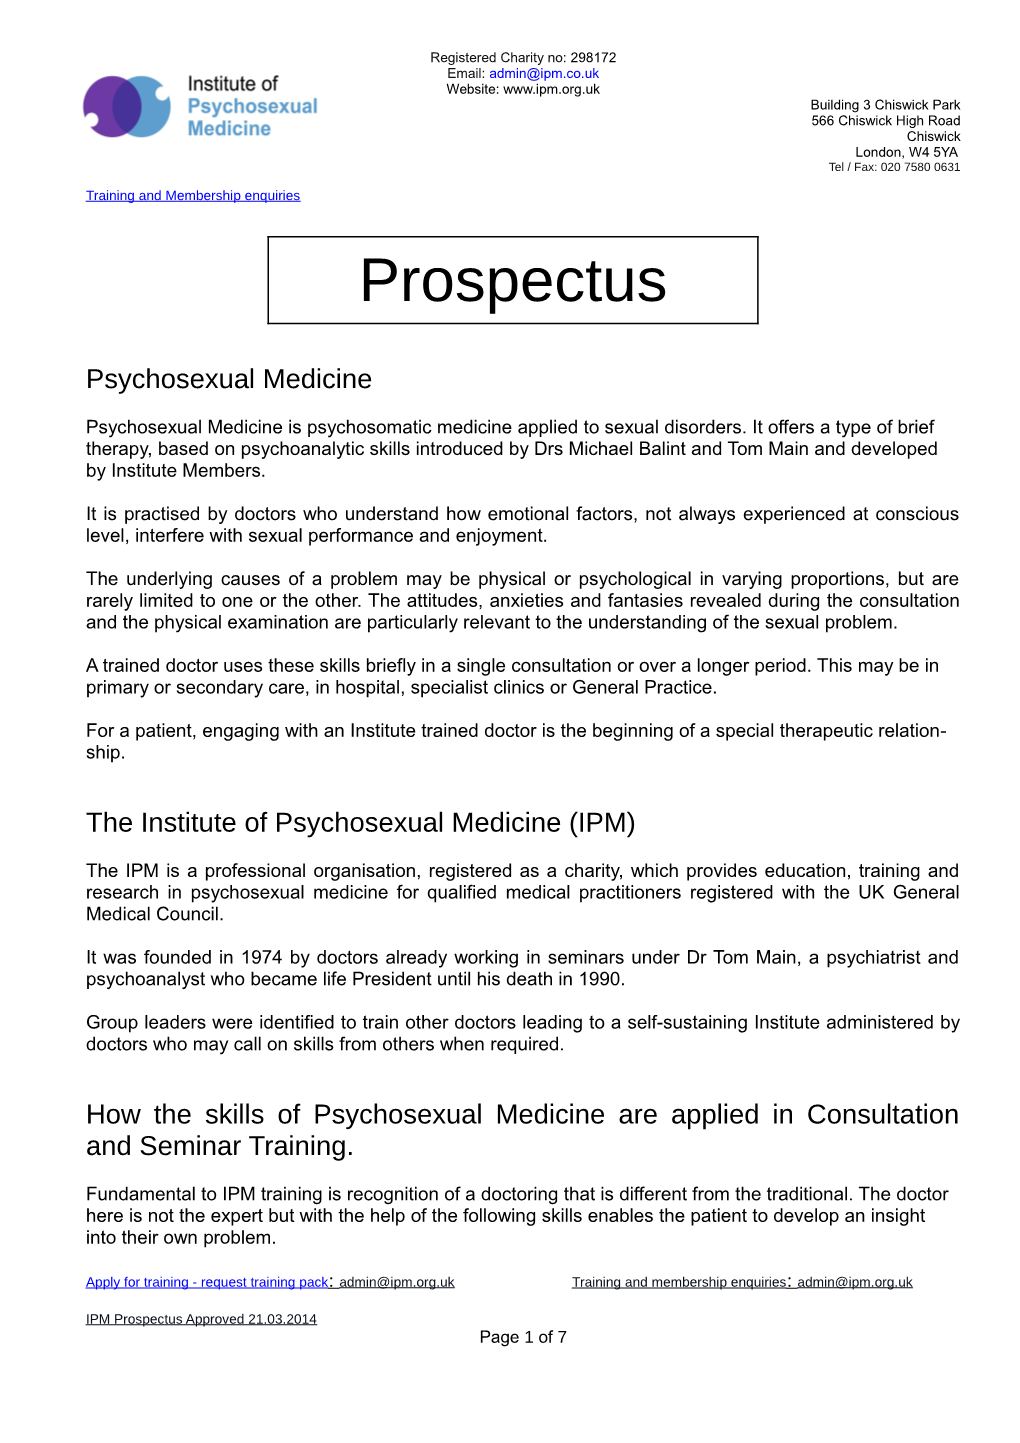 Constitution of the Institute of Psychosexual Medicine